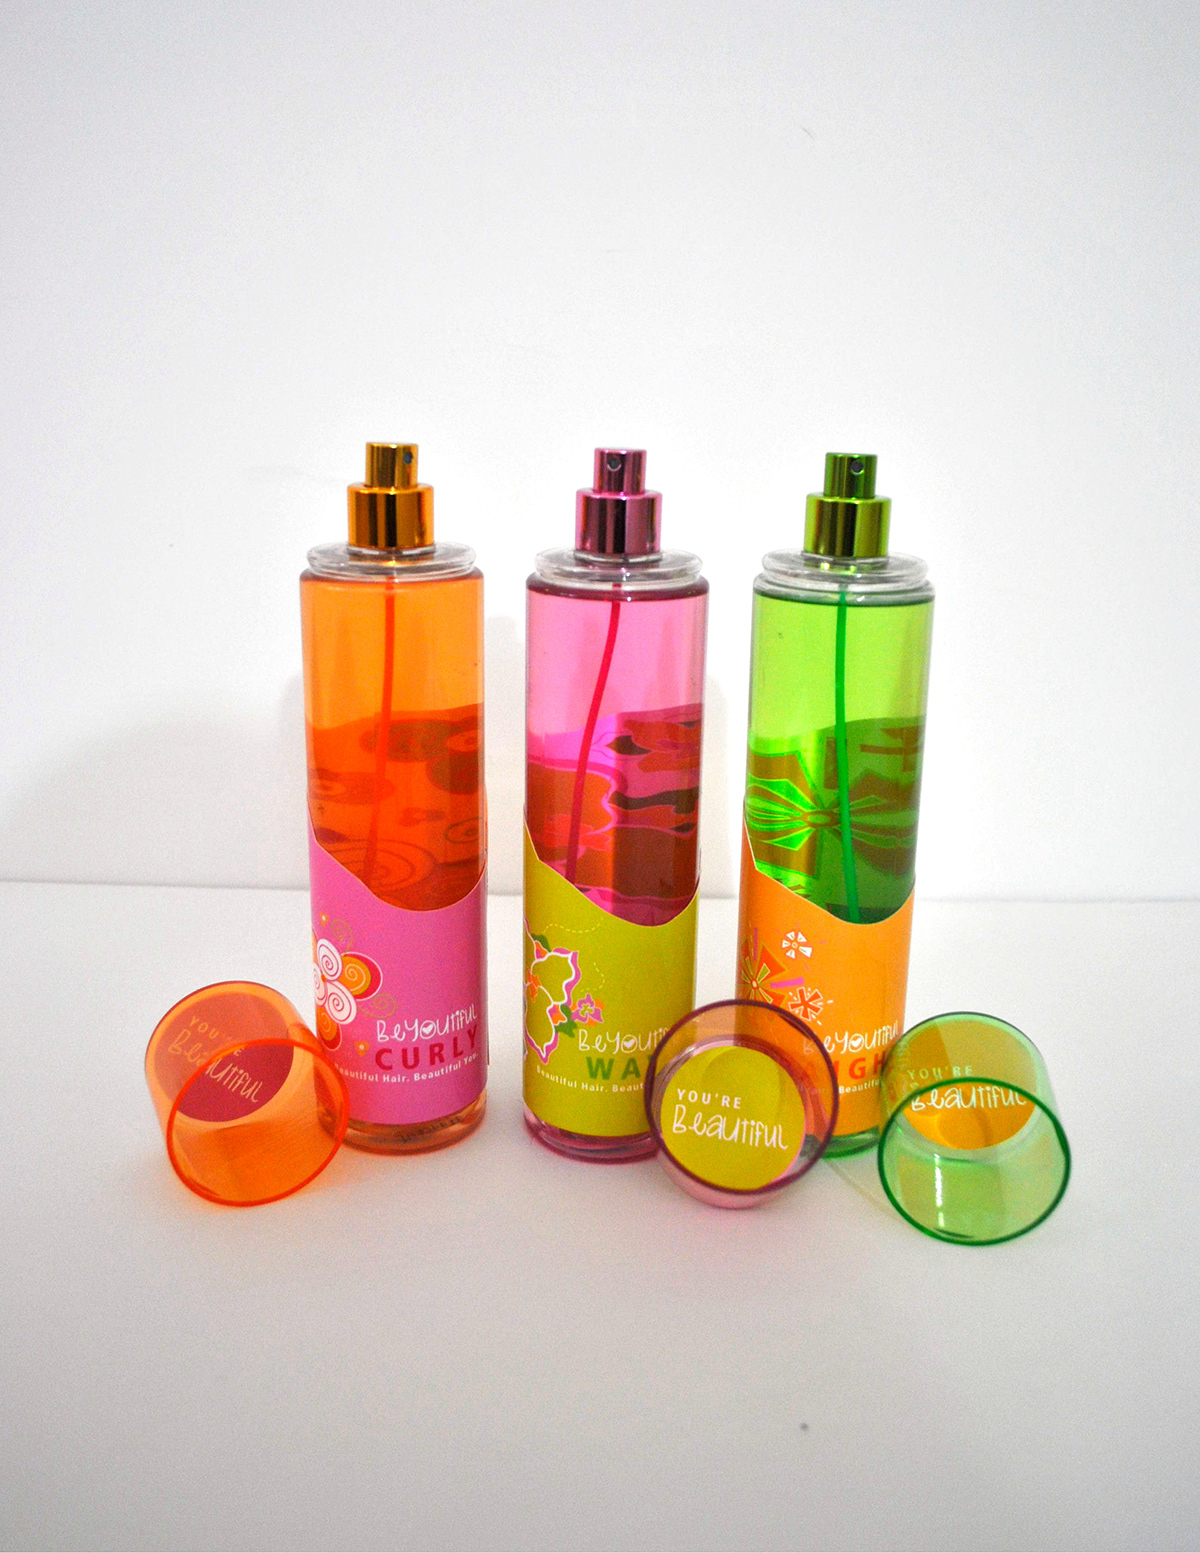 #hygiene #tweengirls #packagedesign #hairspray